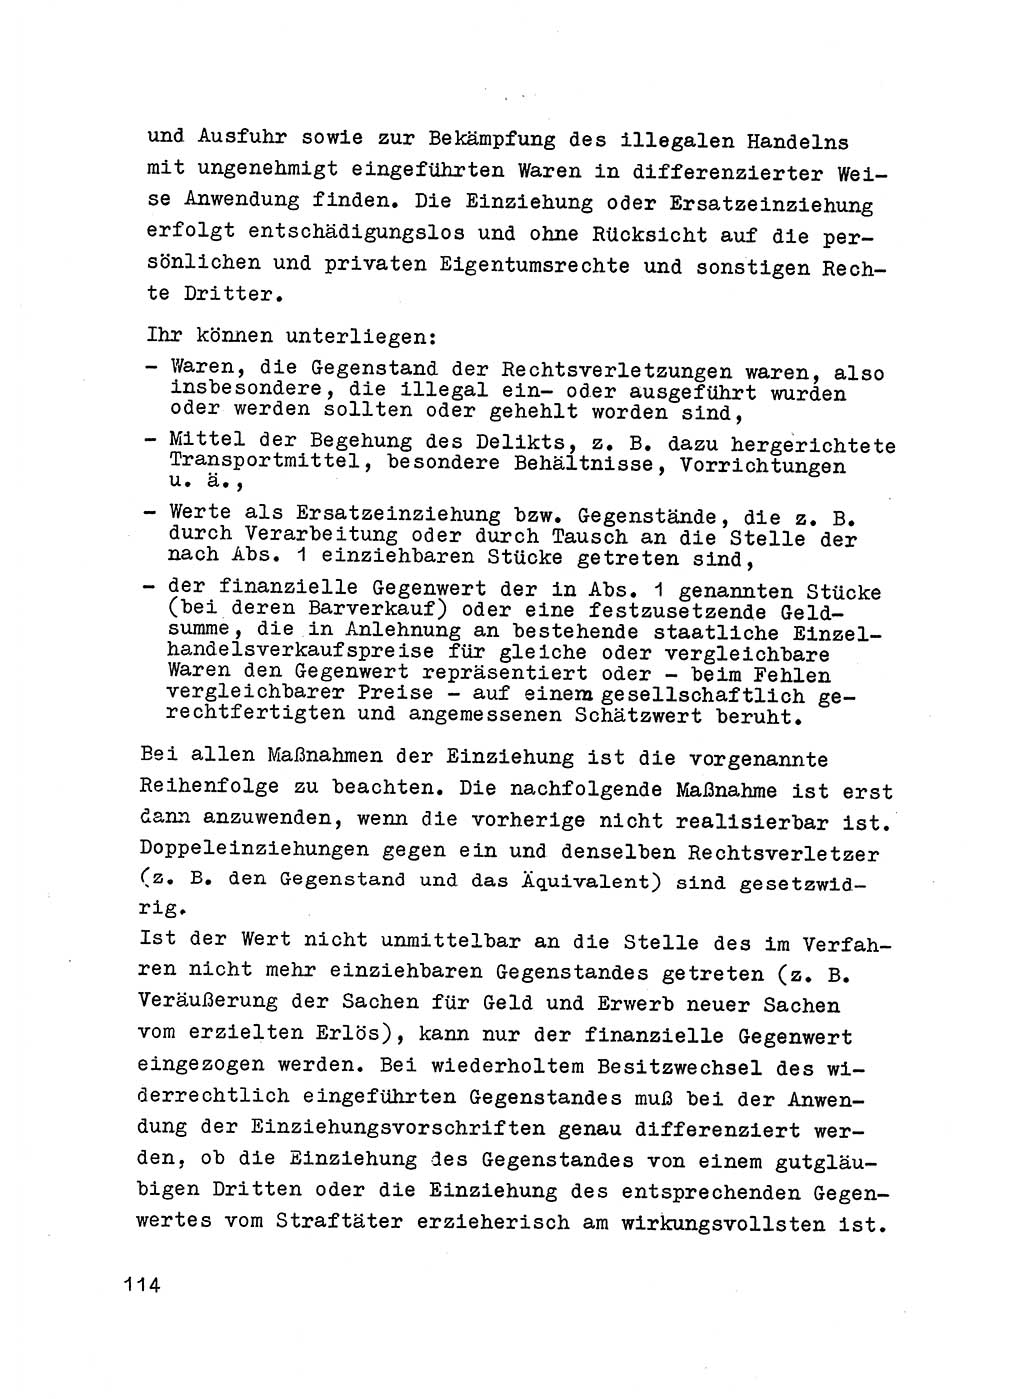 Strafrecht der DDR (Deutsche Demokratische Republik), Besonderer Teil, Lehrmaterial, Heft 6 1970, Seite 114 (Strafr. DDR BT Lehrmat. H. 6 1970, S. 114)